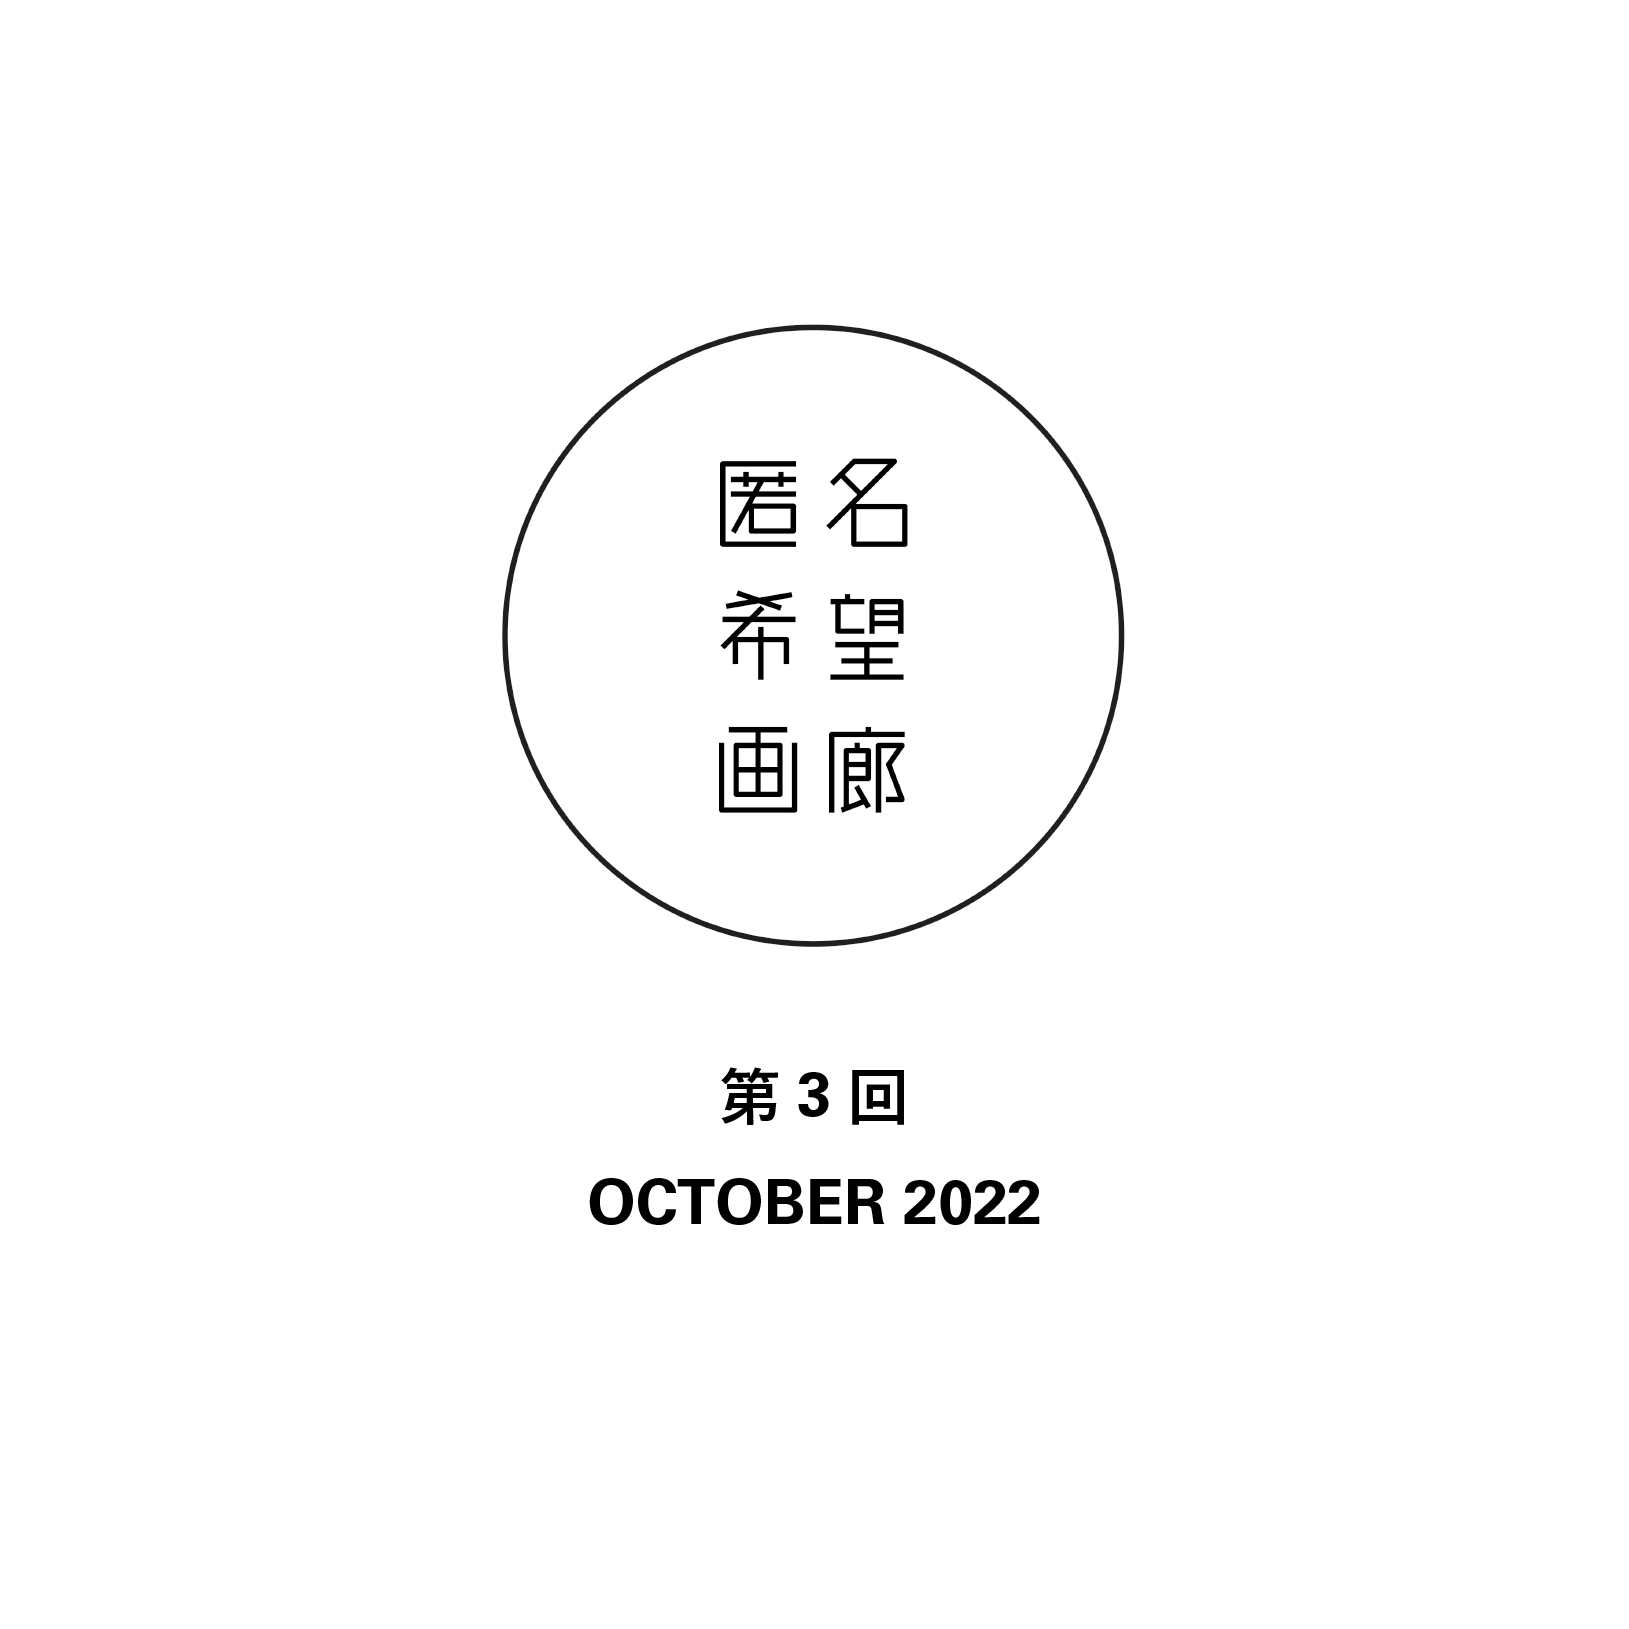 アート販売 オークション 匿名希望画廊 第3回 OCTOBER2022 終了のお知らせ